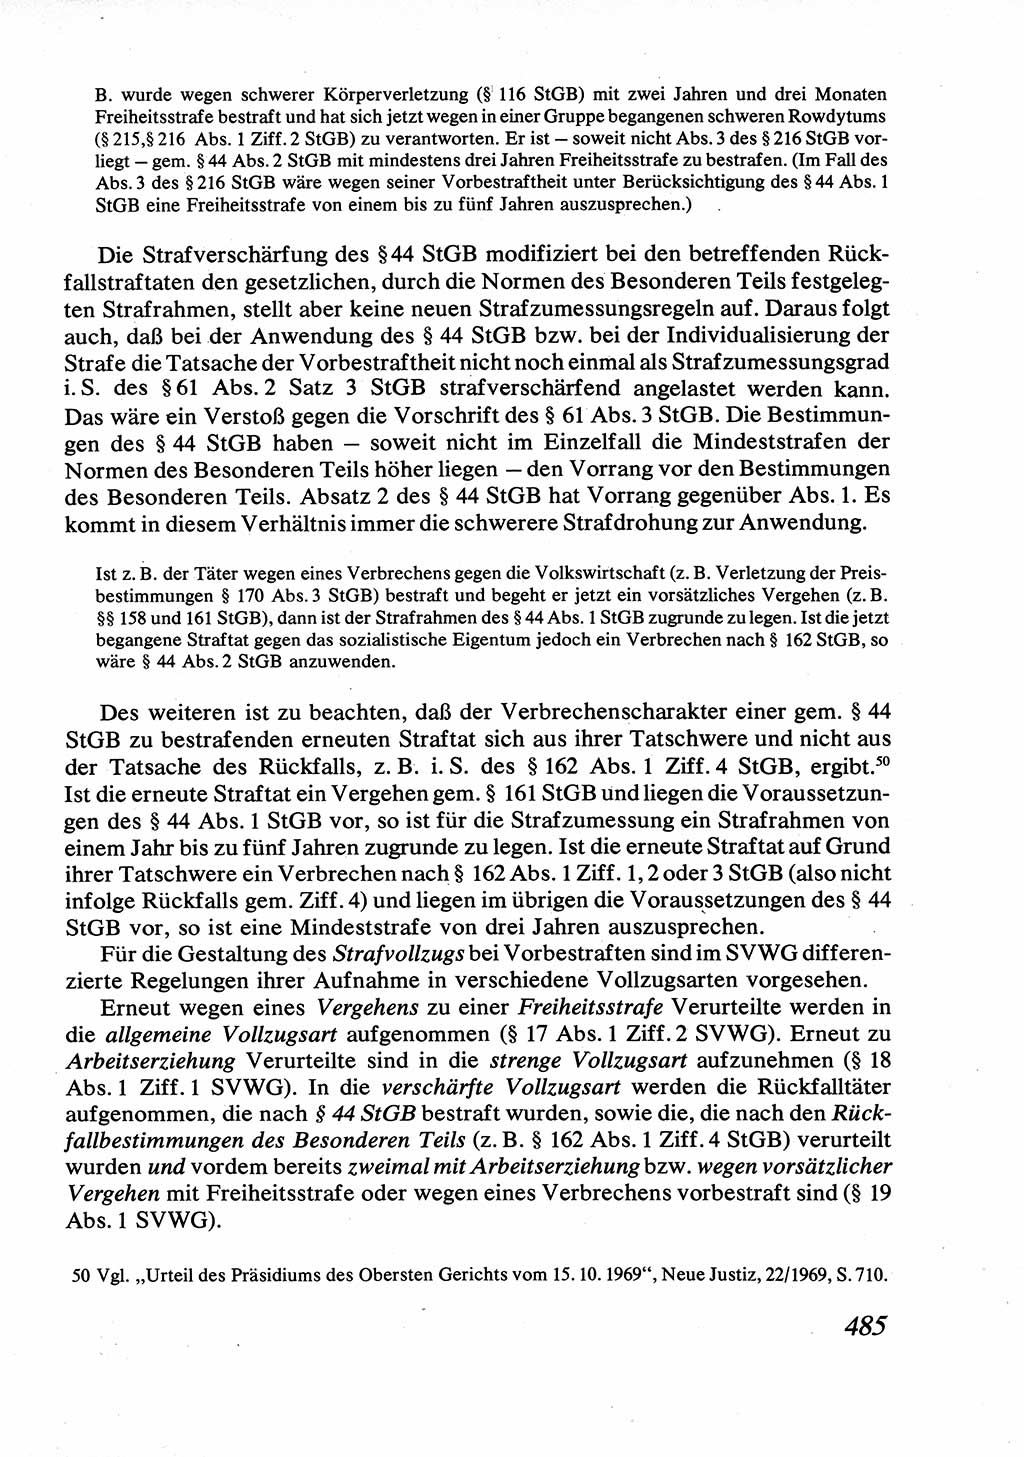 Strafrecht [Deutsche Demokratische Republik (DDR)], Allgemeiner Teil, Lehrbuch 1976, Seite 485 (Strafr. DDR AT Lb. 1976, S. 485)